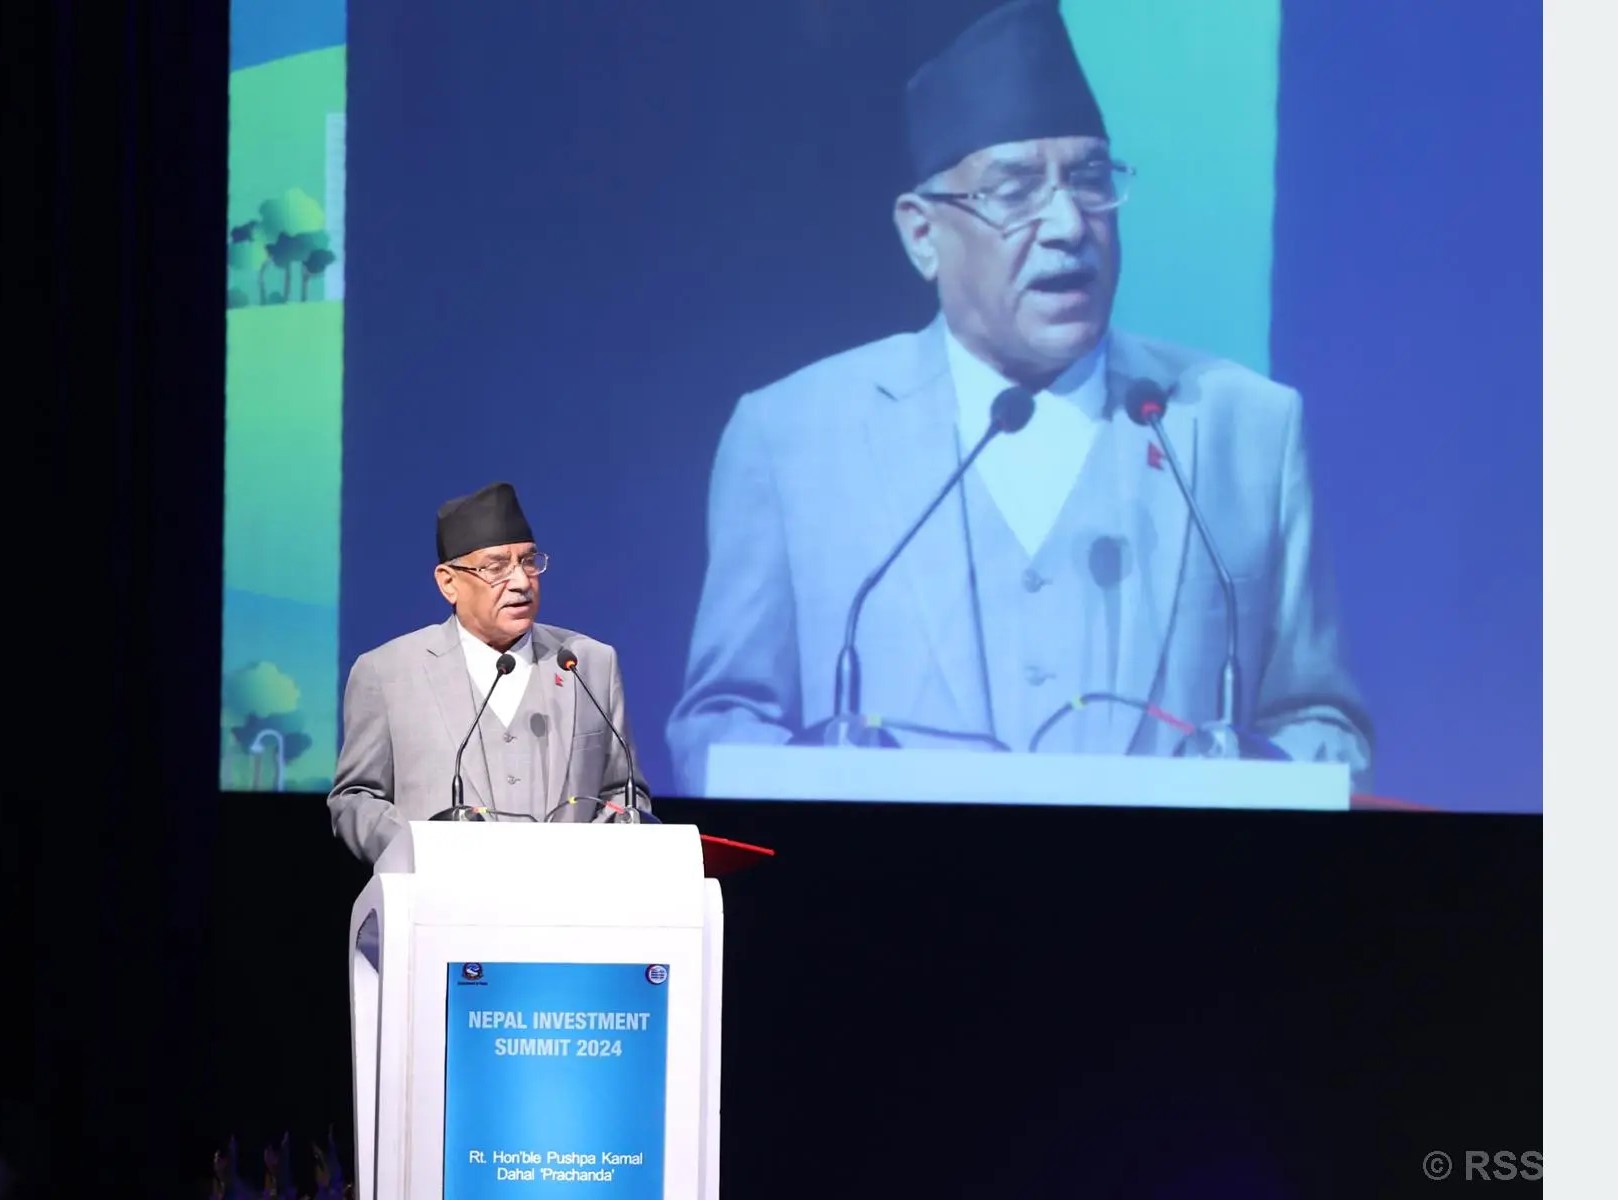  नेपाल उदार आर्थिक नीतिप्रति प्रतिबद्ध छ, लगानी गर्नुहोस्ः प्रधानमन्त्री